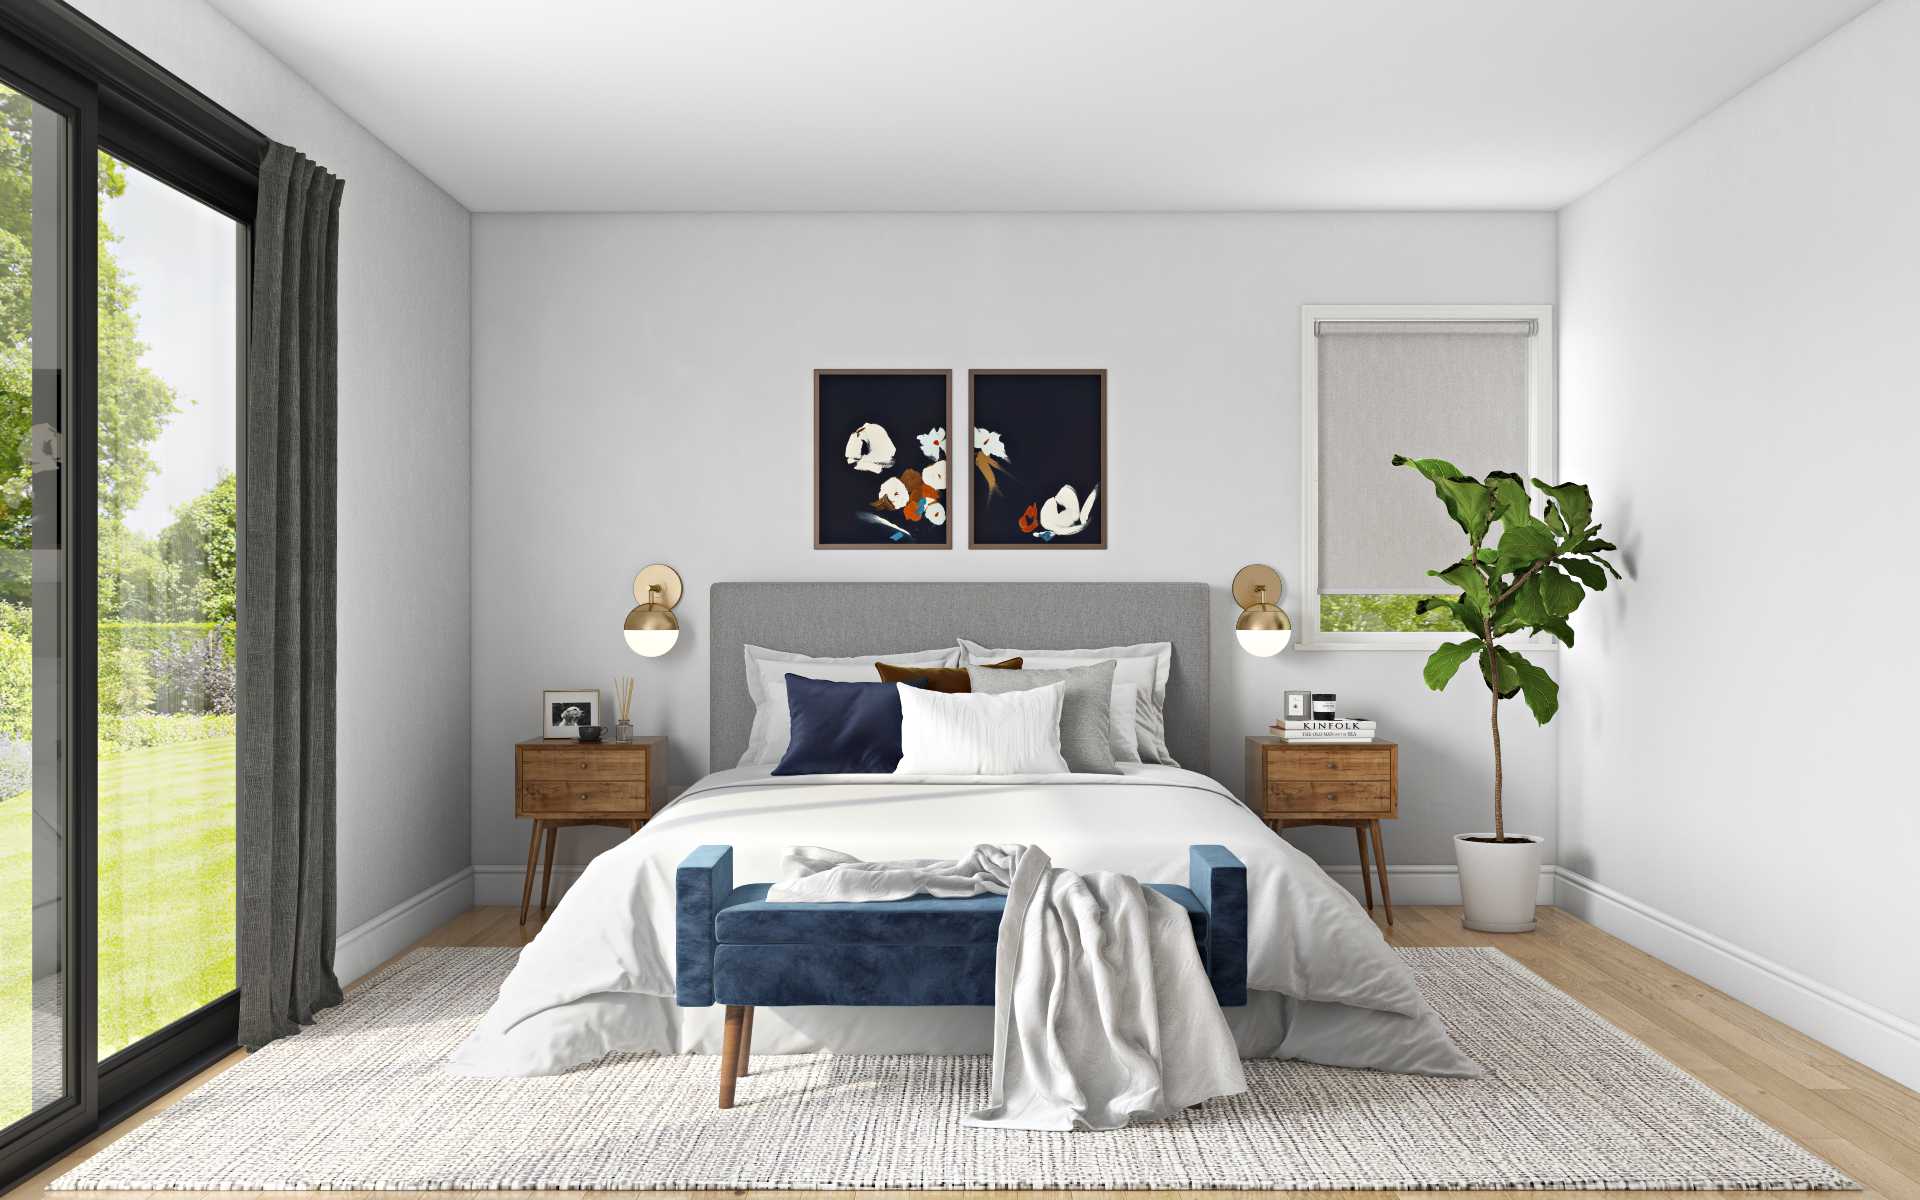 Midcentury Modern, Minimal, Scandinavian Bedroom Design by Havenly ...